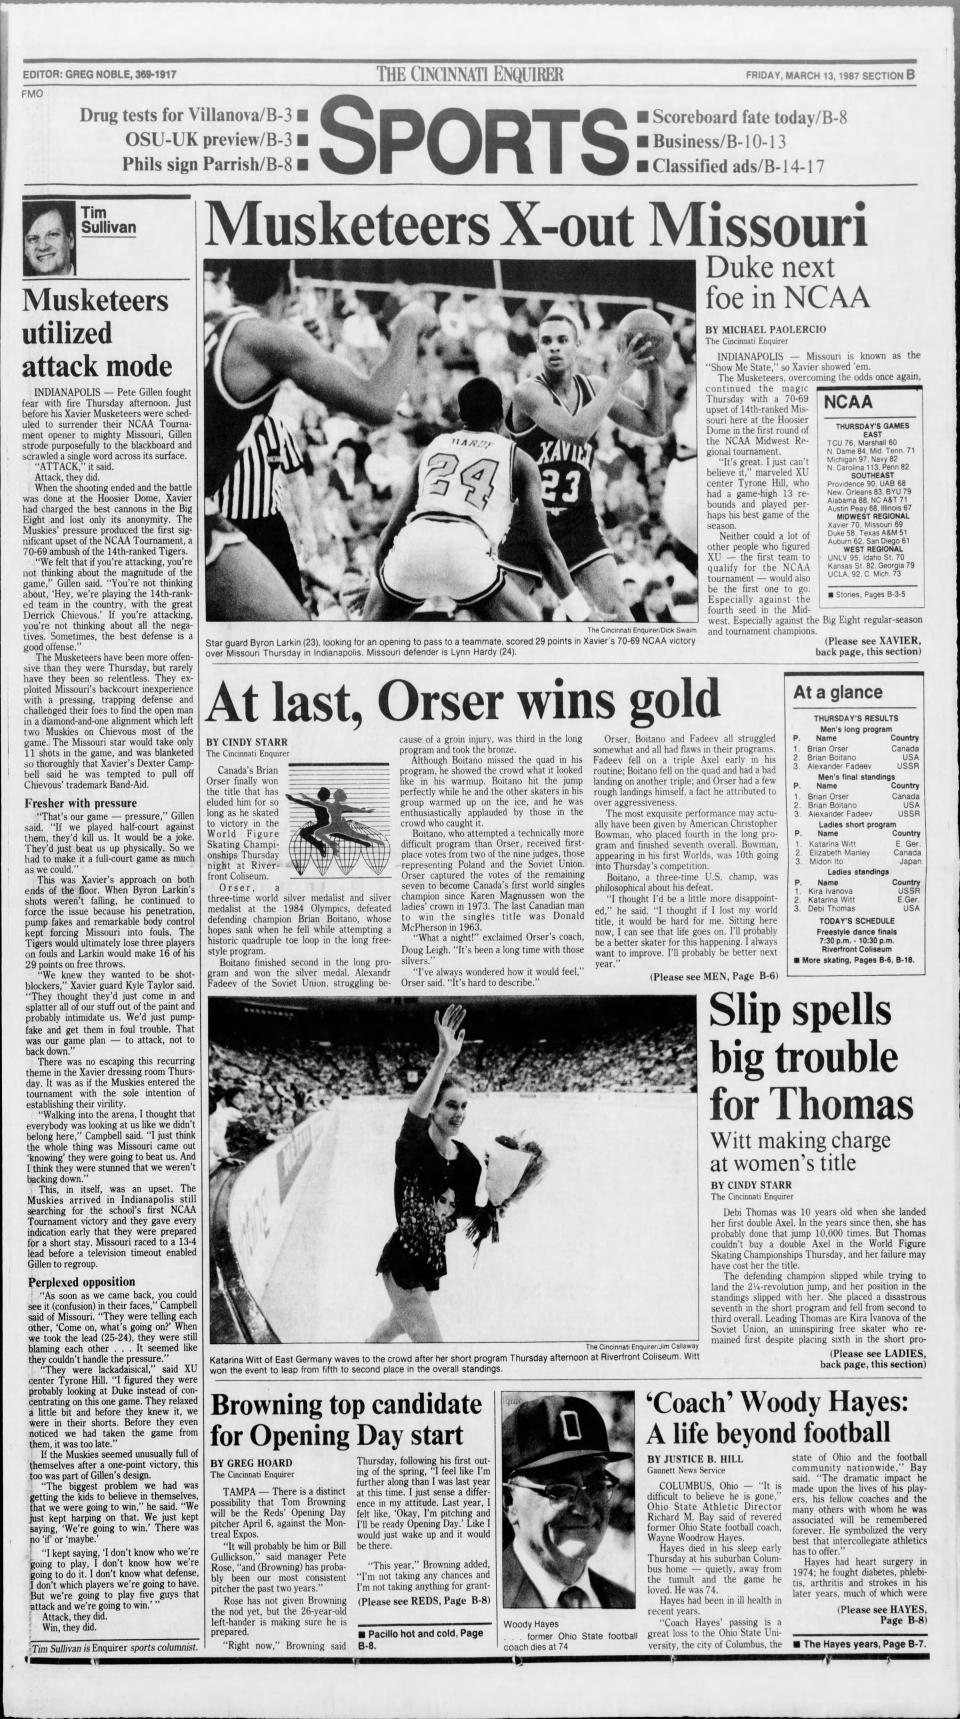 March 13, 1987 Cincinnati Enquirer sports cover